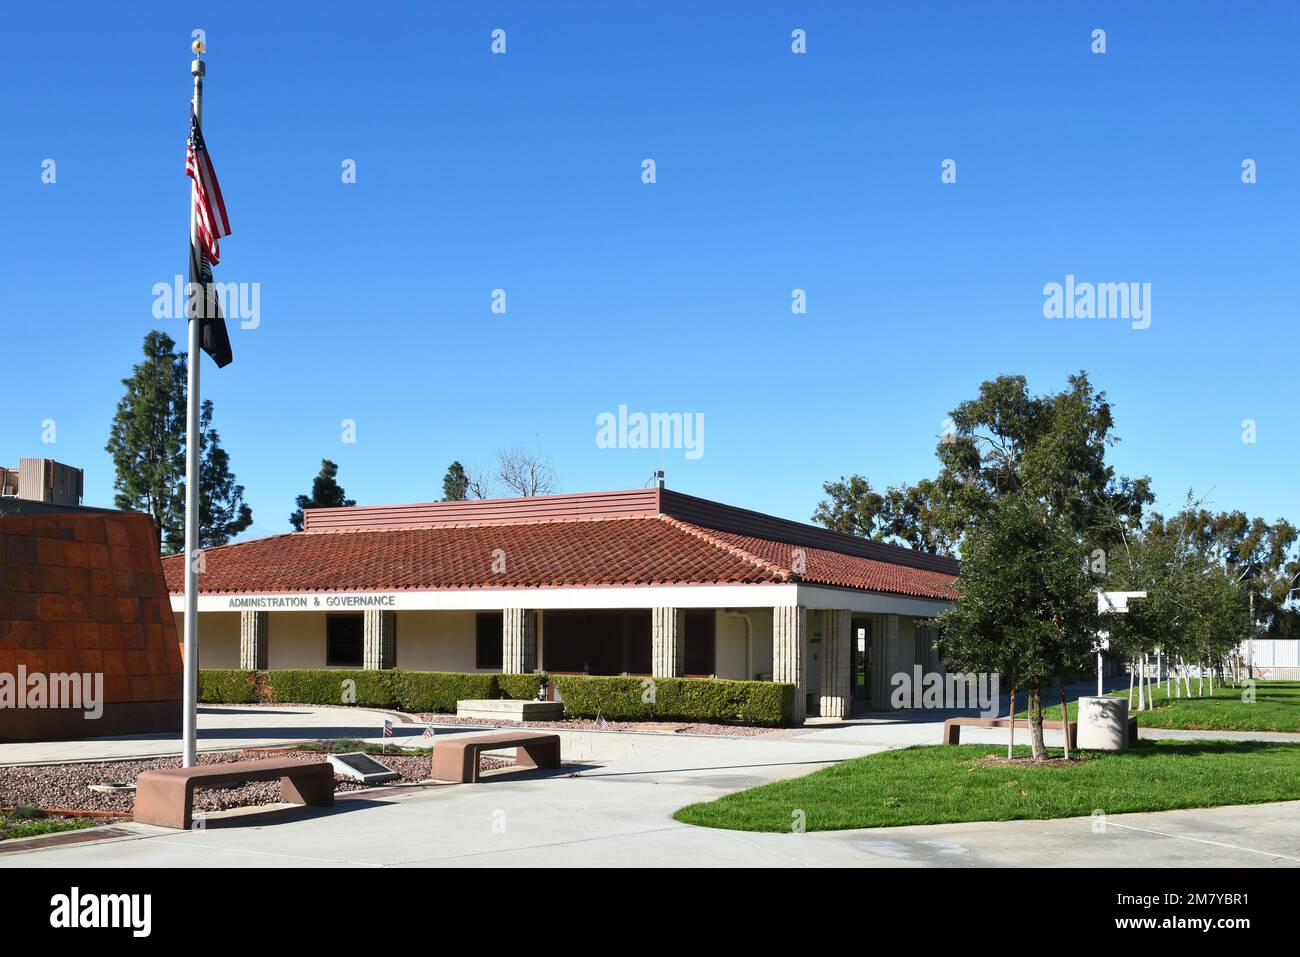 MISSION VIEJO, KALIFORNIEN - 8. JANUAR 2023: Veterans Memorial und das Verwaltungs- und Regierungsgebäude auf dem Campus des Saddleback College. Stockfoto